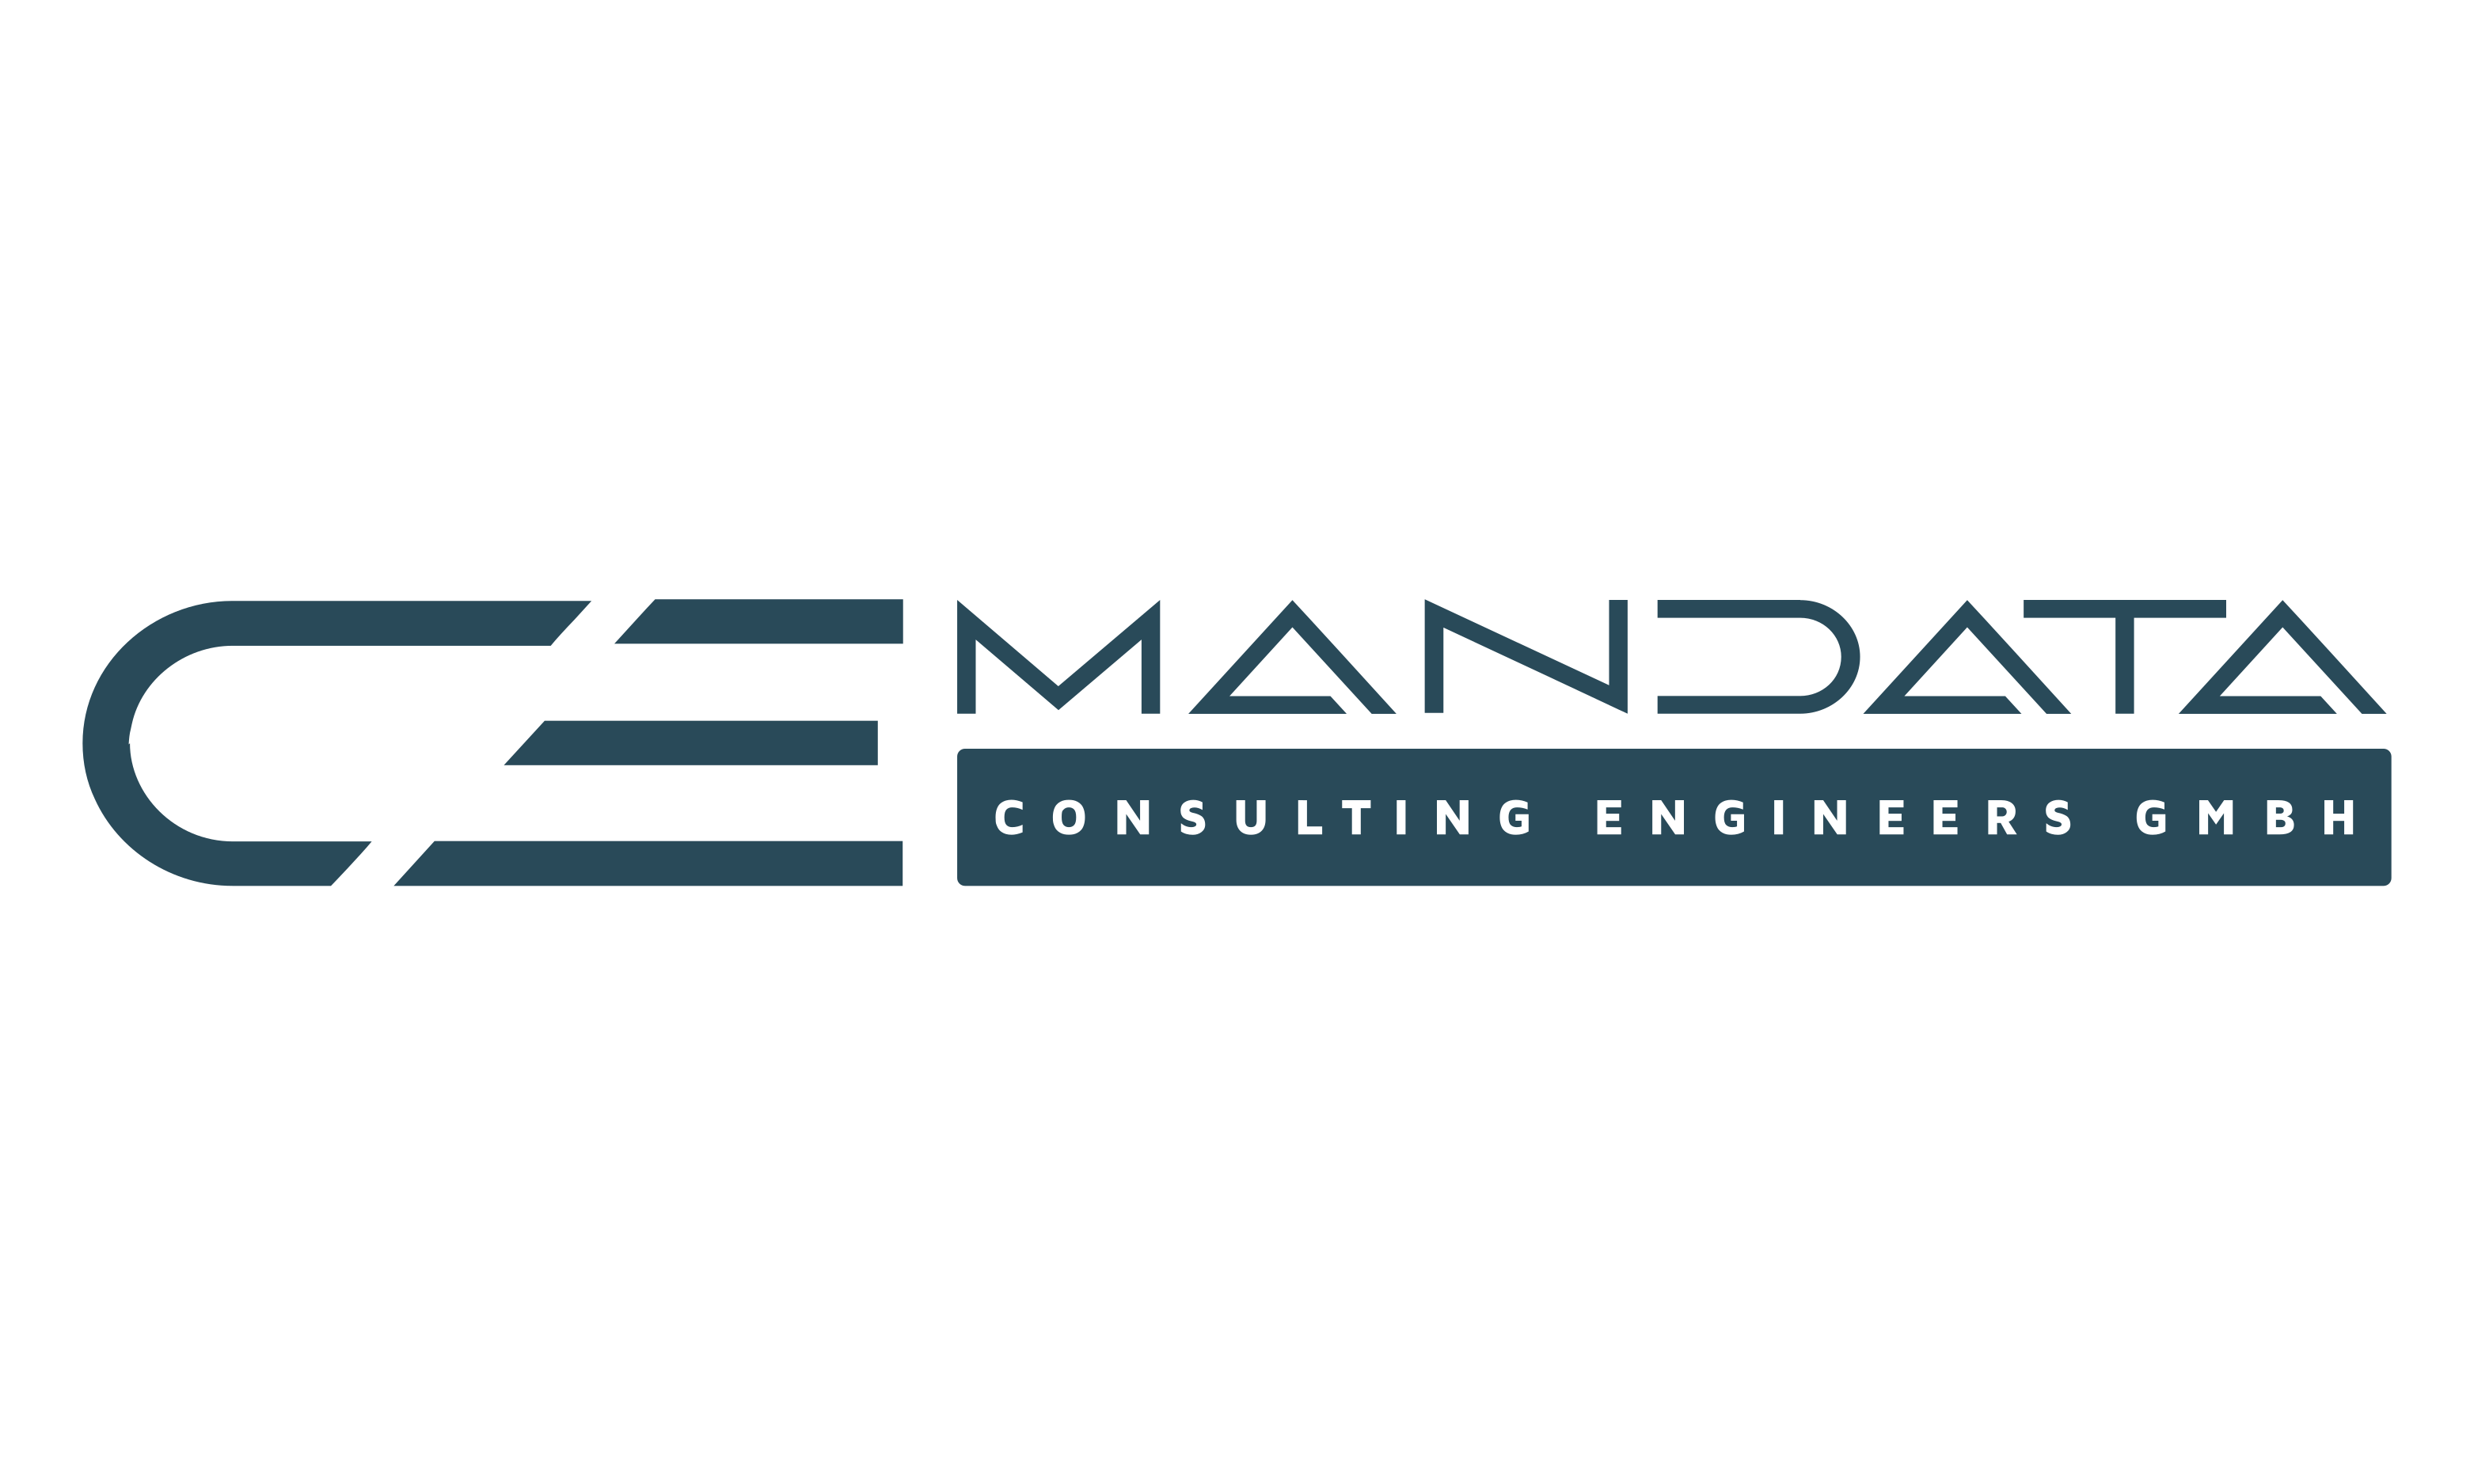 MANDATA-CONSULTING ENGINEERS